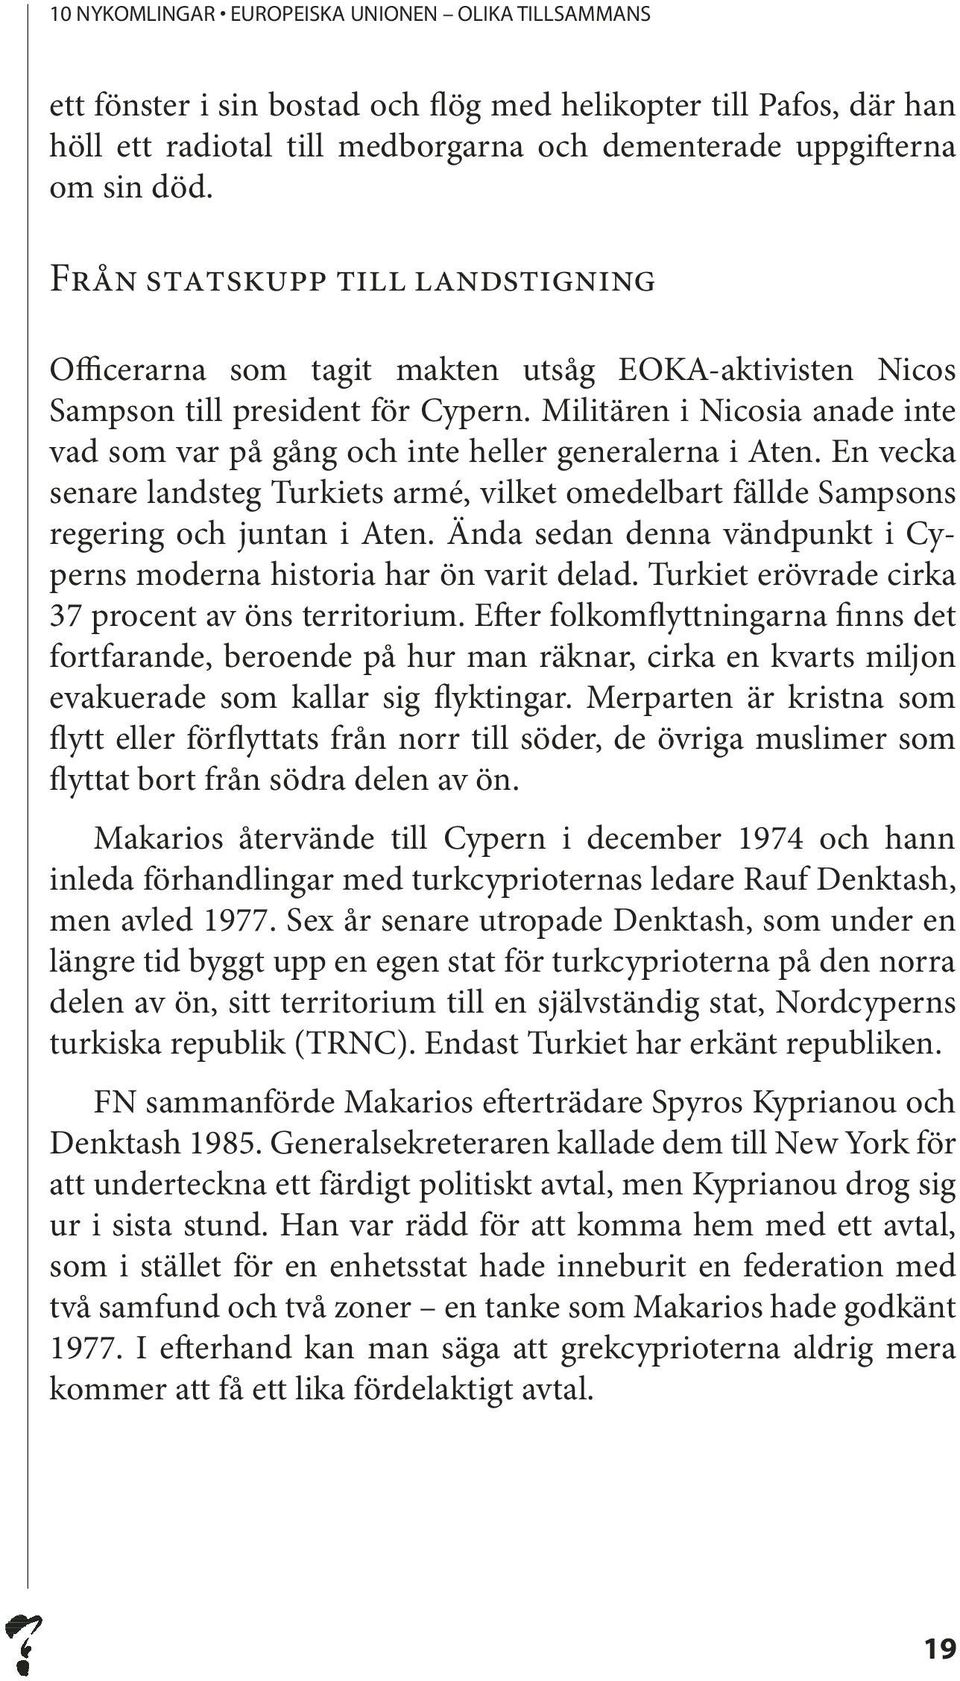 Militären i Nicosia anade inte vad som var på gång och inte heller generalerna i Aten. En vecka senare landsteg Turkiets armé, vilket omedelbart fällde Sampsons regering och juntan i Aten.